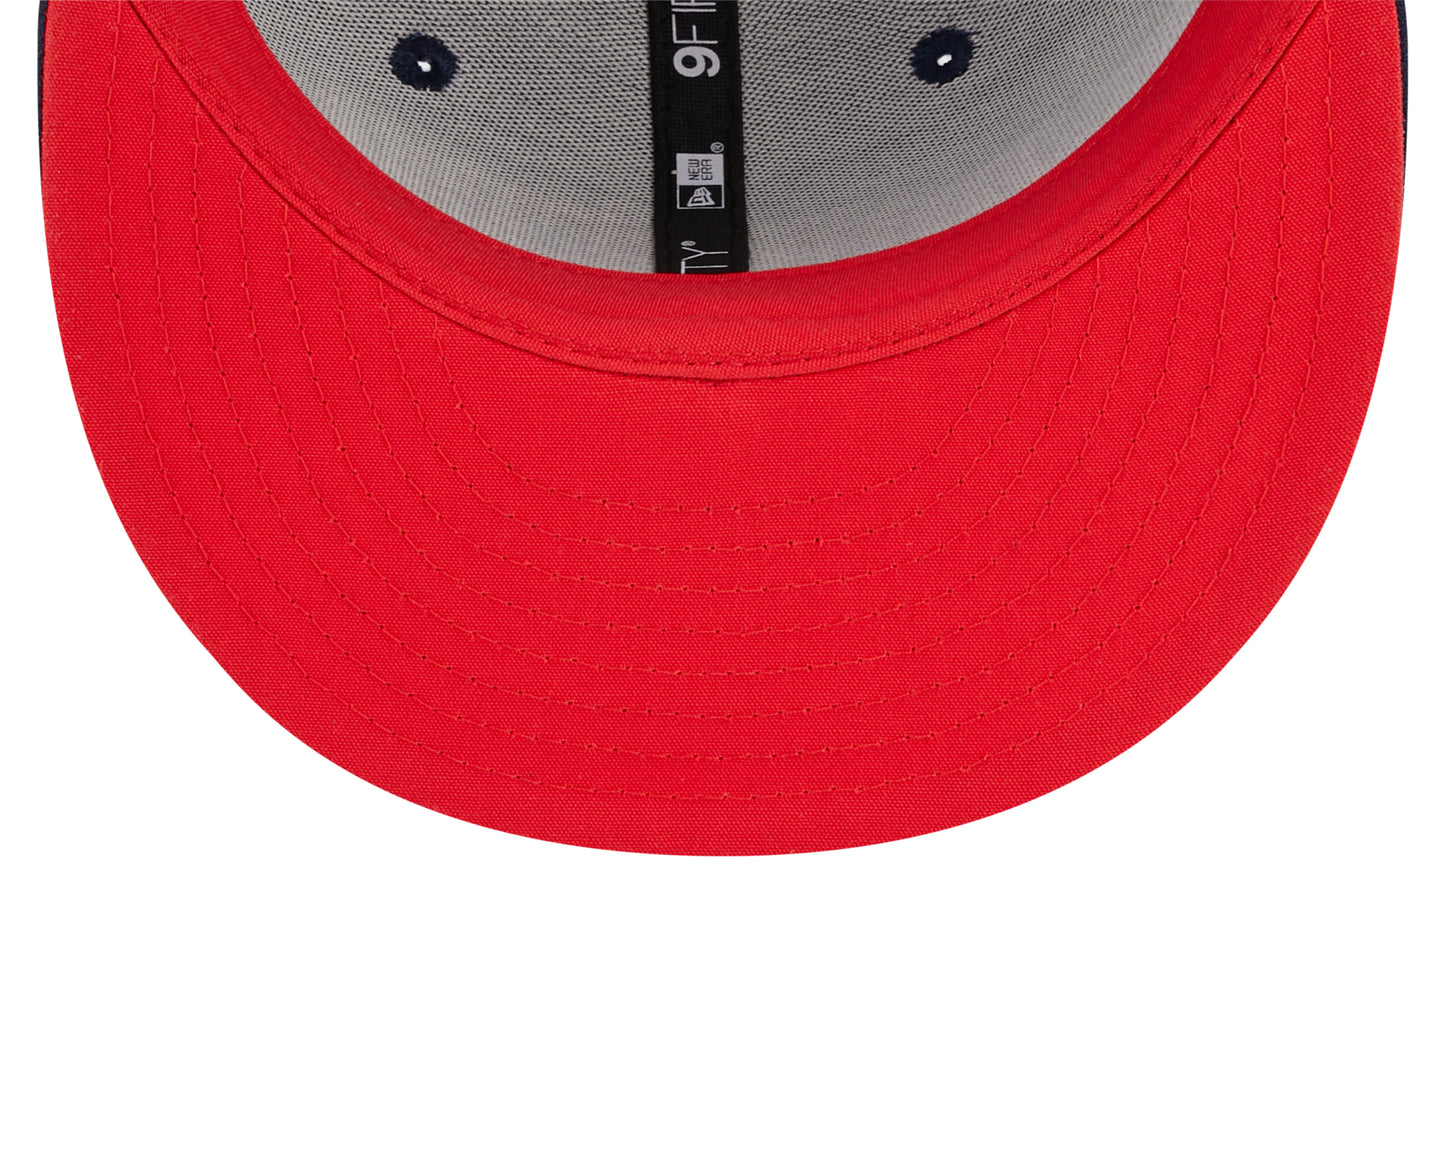 Mens Houston Rockets New Era 2022 NBA City Edition 9FIFTY Snapback Hat